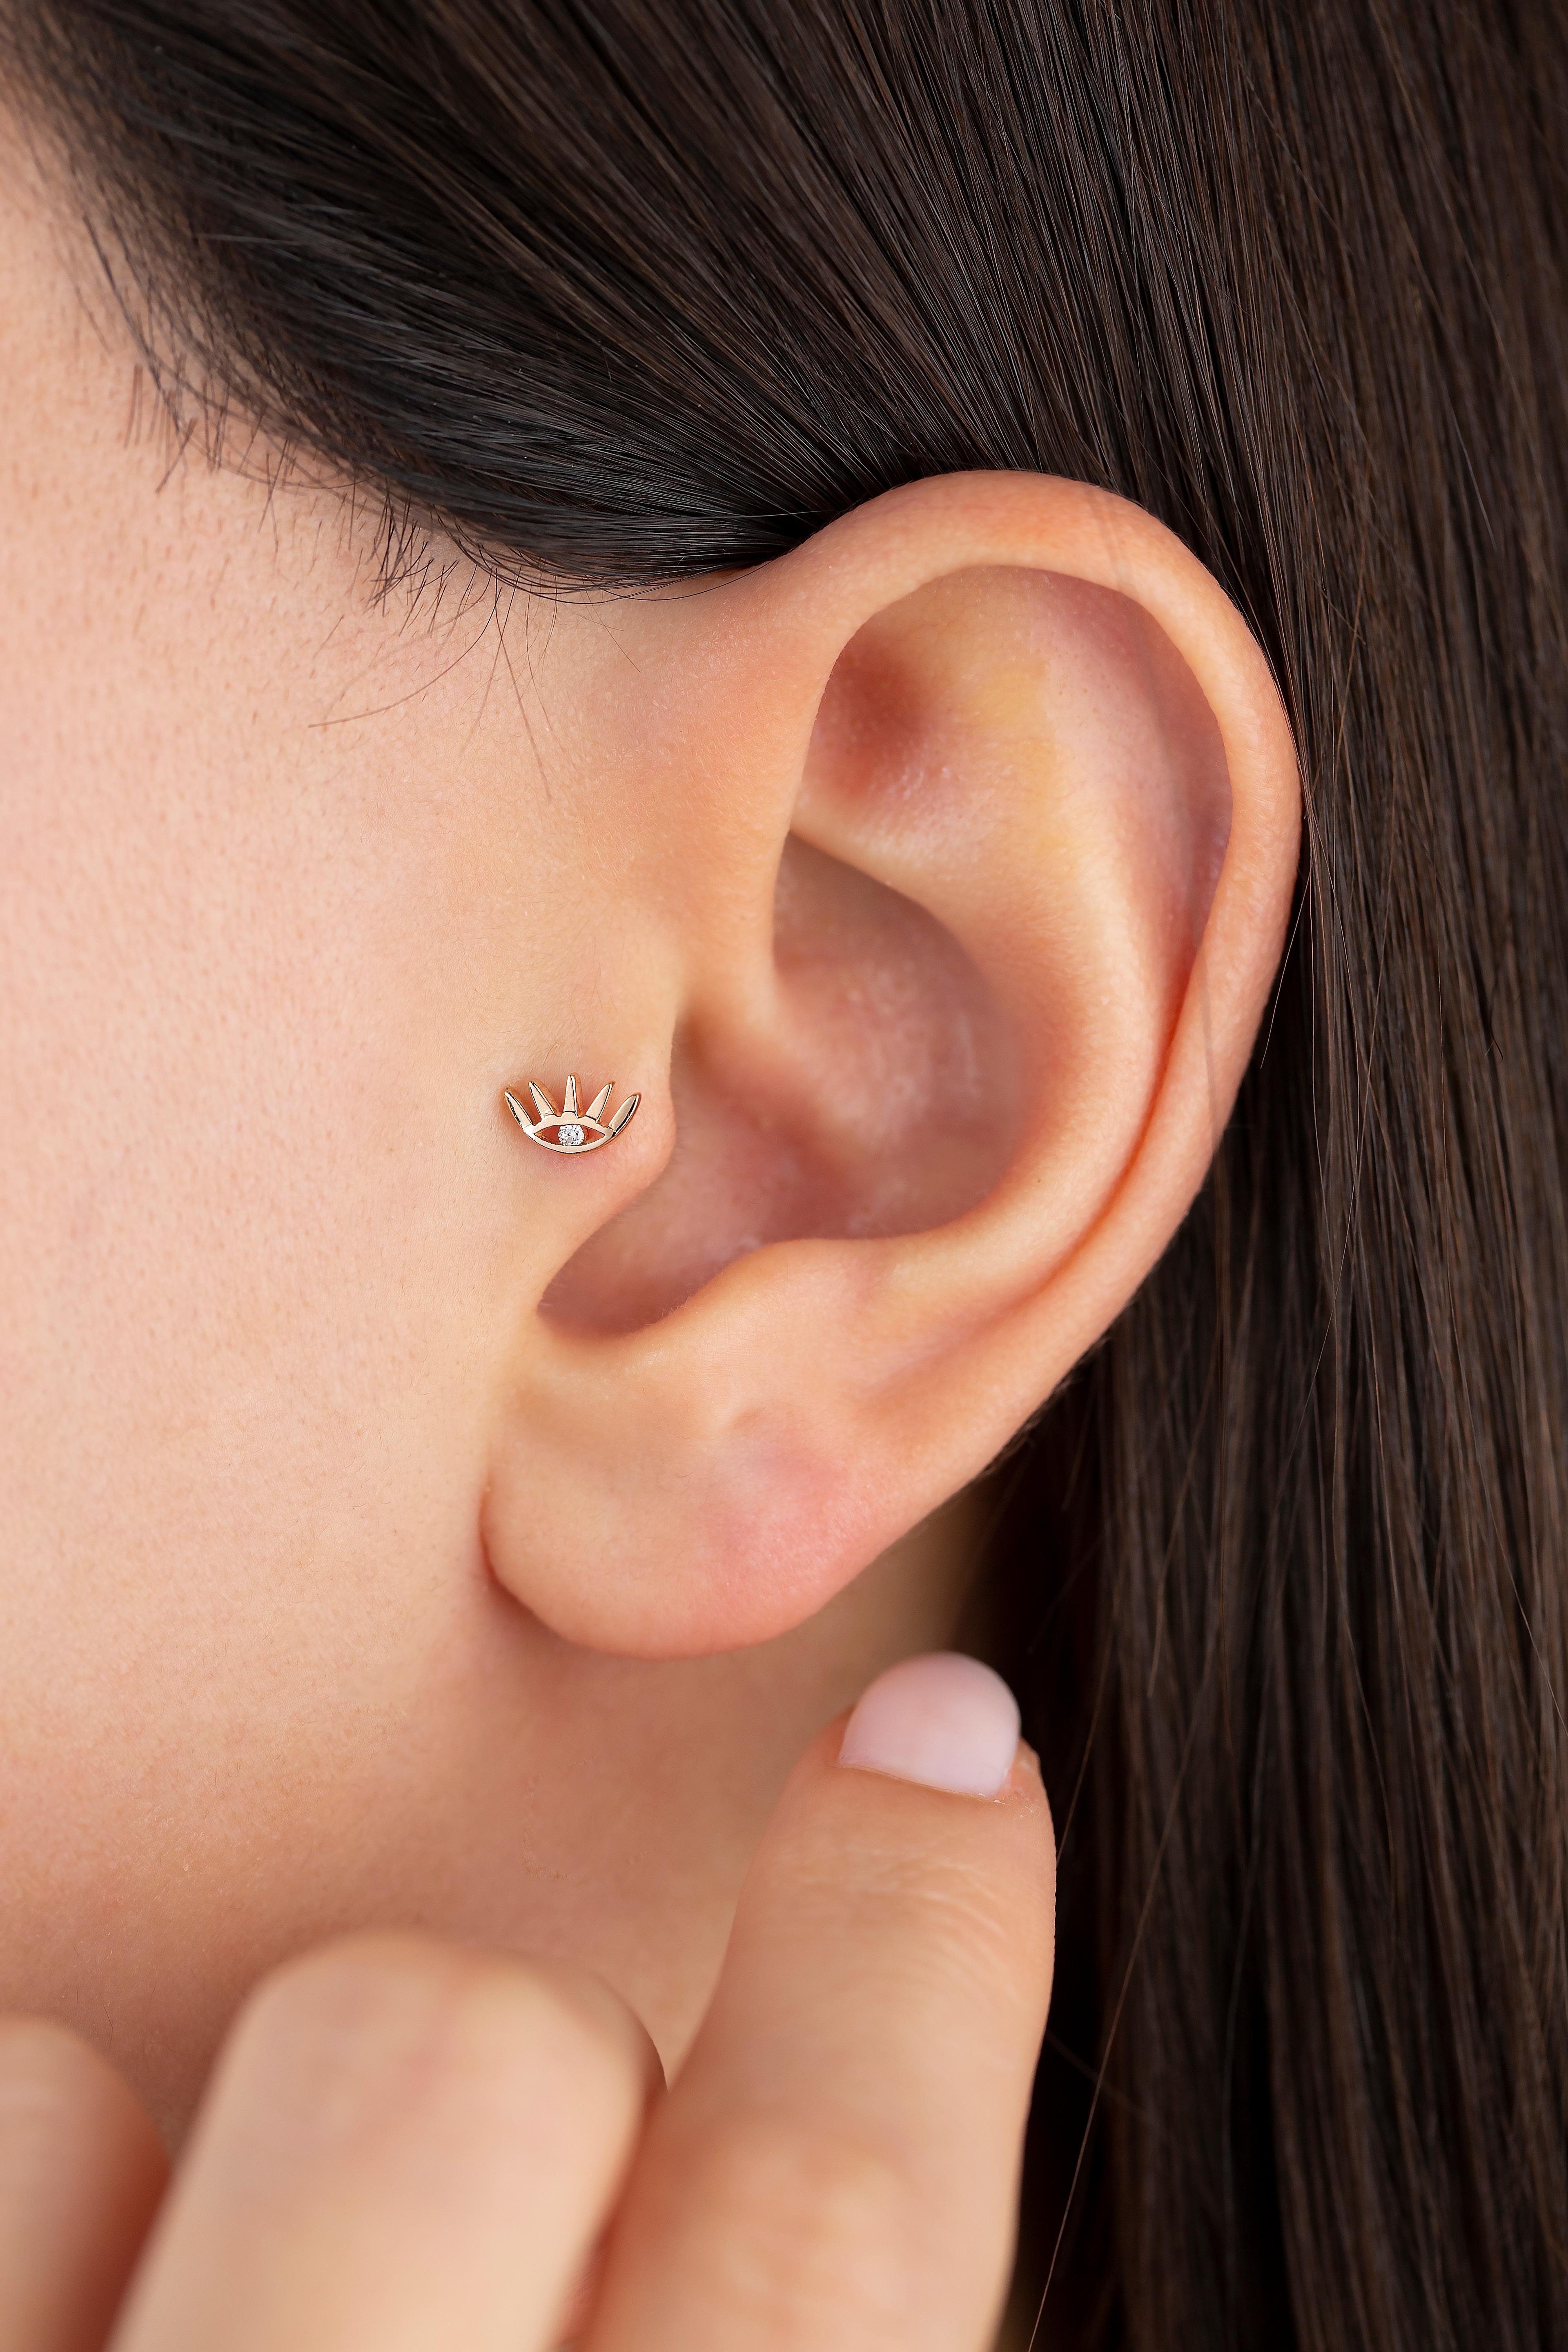 14K Gold 0,02 Karat Diamant-Ohrring mit Auge durchbohrt, Gold-Diamant-Ohrring

Du kannst das Piercing auch als Ohrring verwenden! Auch dieses Piercing ist geeignet für Tragus, Nase, Helix, Lappen, flach, Medusa, Monreo, Labret und Stud.

Dieses